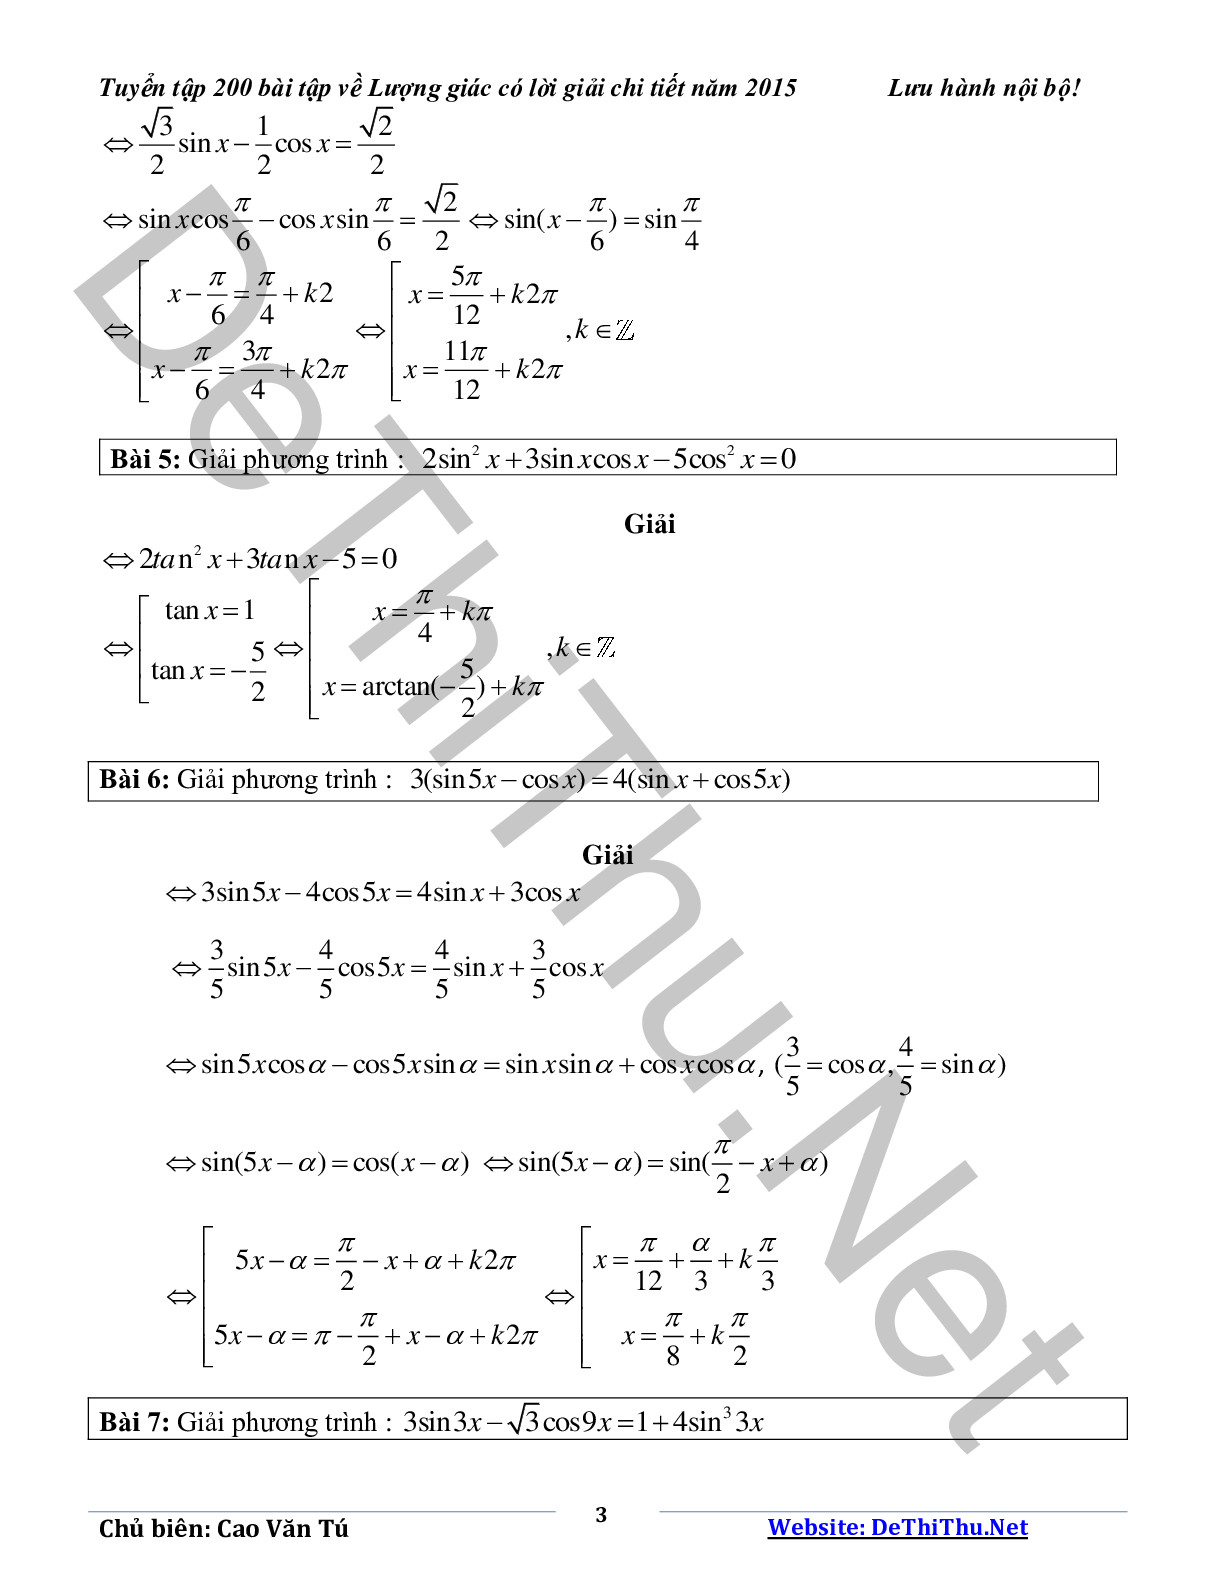 Tuyển tập 200 bài tập lượng giác có lời giải chi tiết năm 2015 (trang 3)